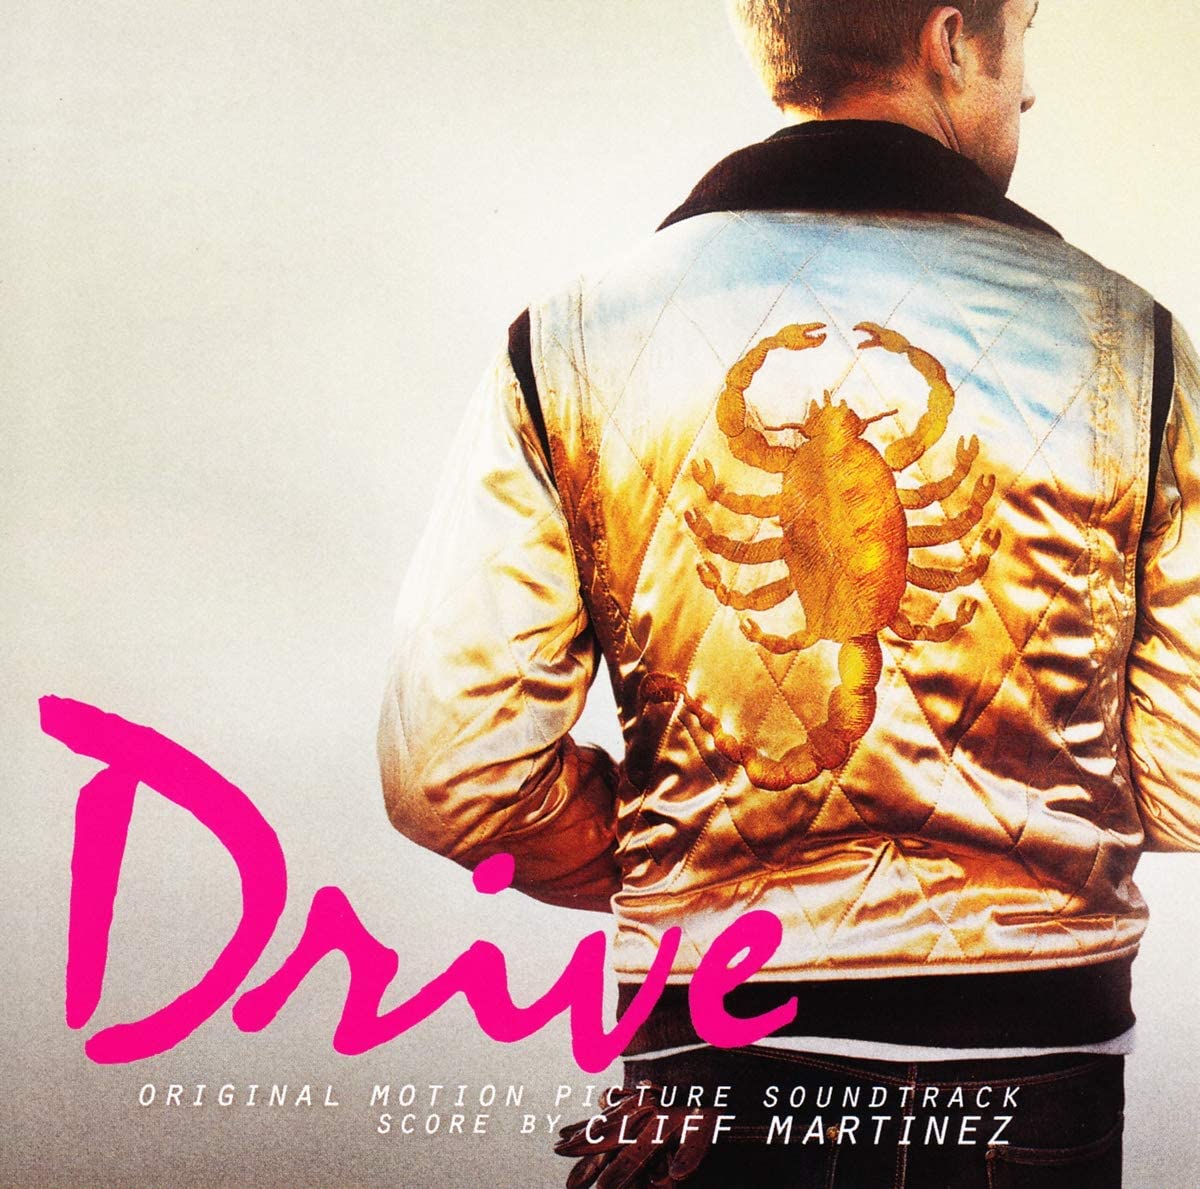 CLIFF MARTINEZ "Drive: Original Motion Picture Soundtrack" 2xLP